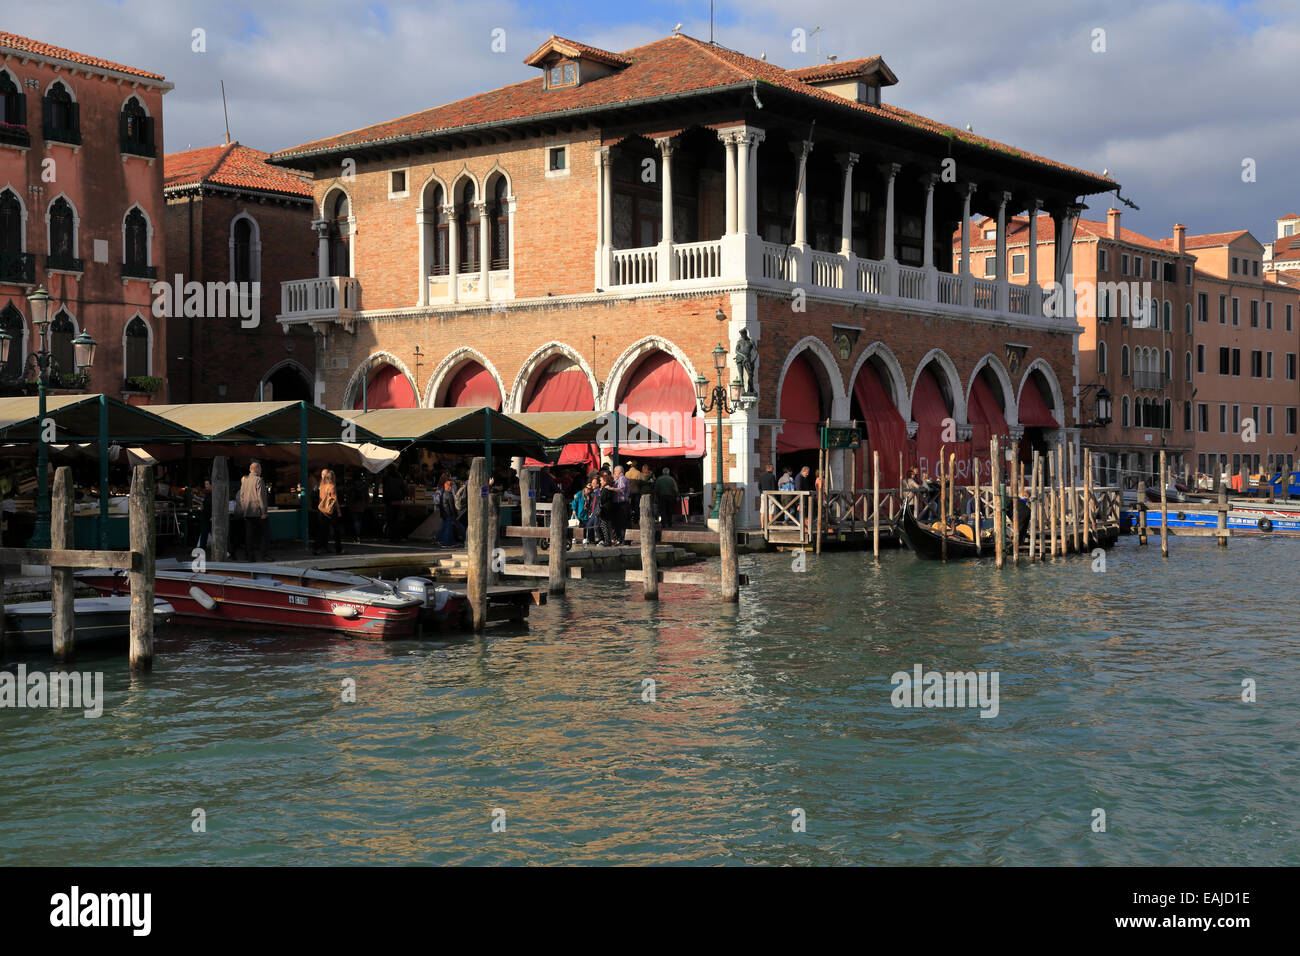 Le marché aux poissons du Rialto par le Grand Canal, Venise, Italie. Banque D'Images